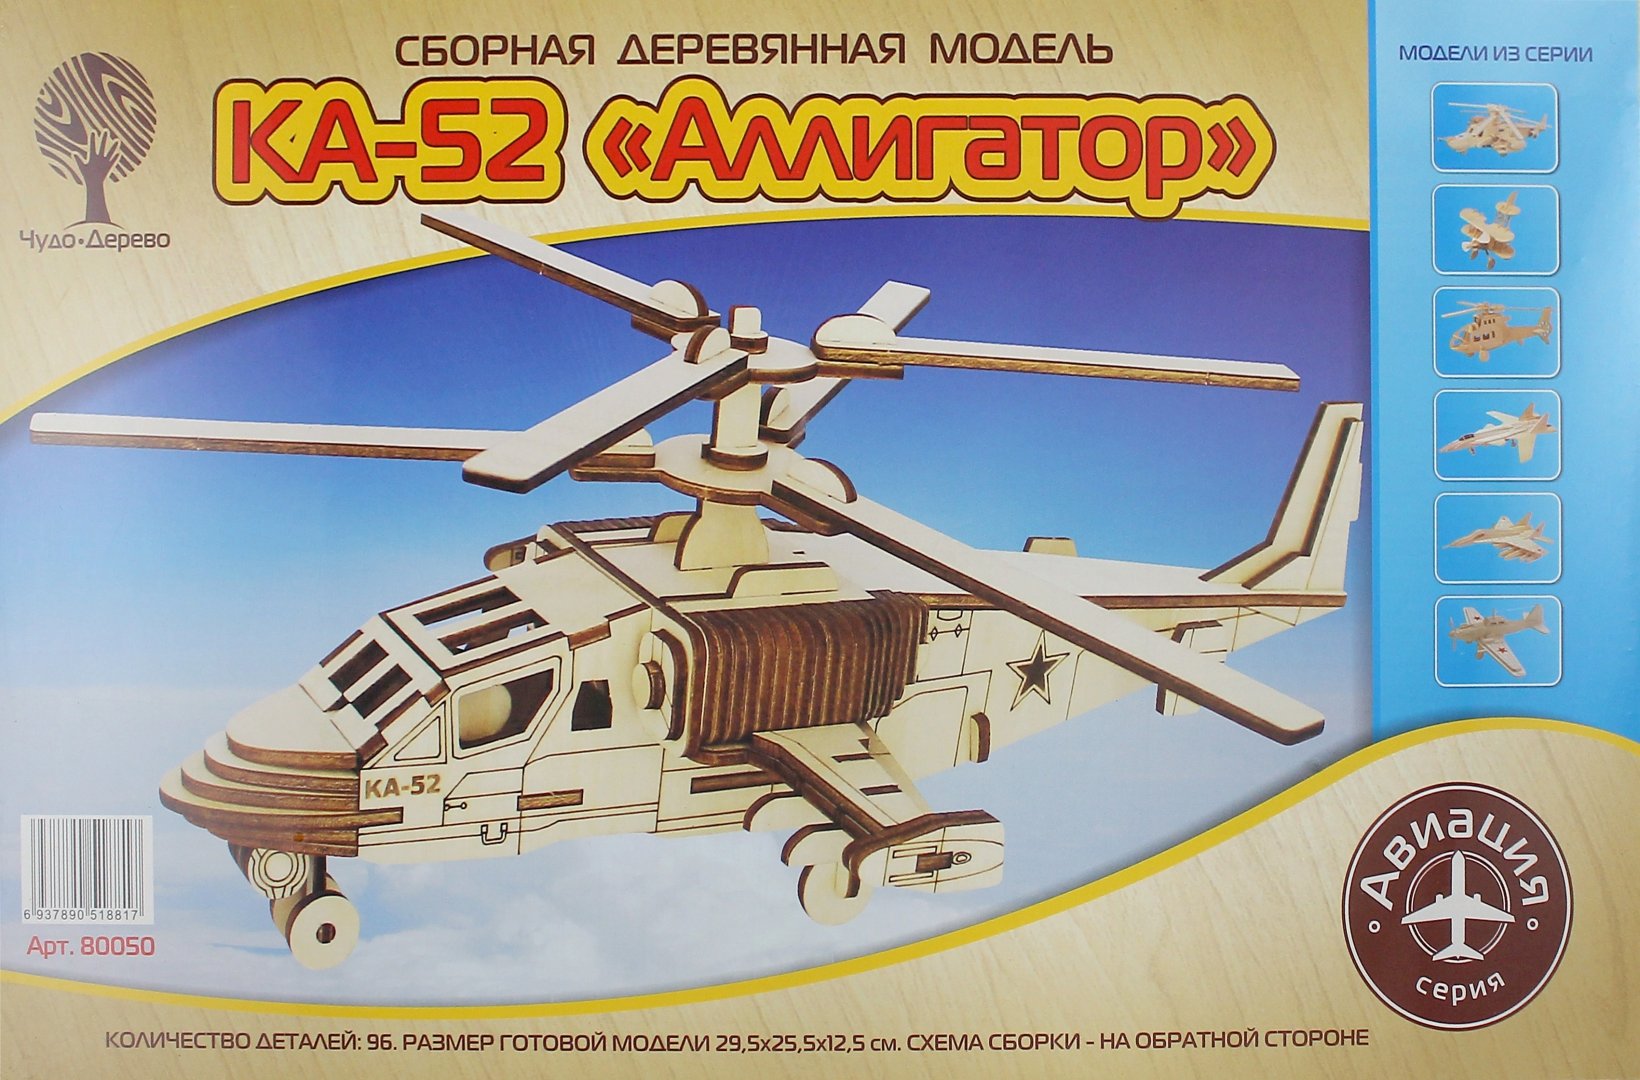 Иллюстрация 1 из 5 для Сборная деревянная модель. Вертолет КА-52 "Аллигатор" | Лабиринт - игрушки. Источник: Лабиринт